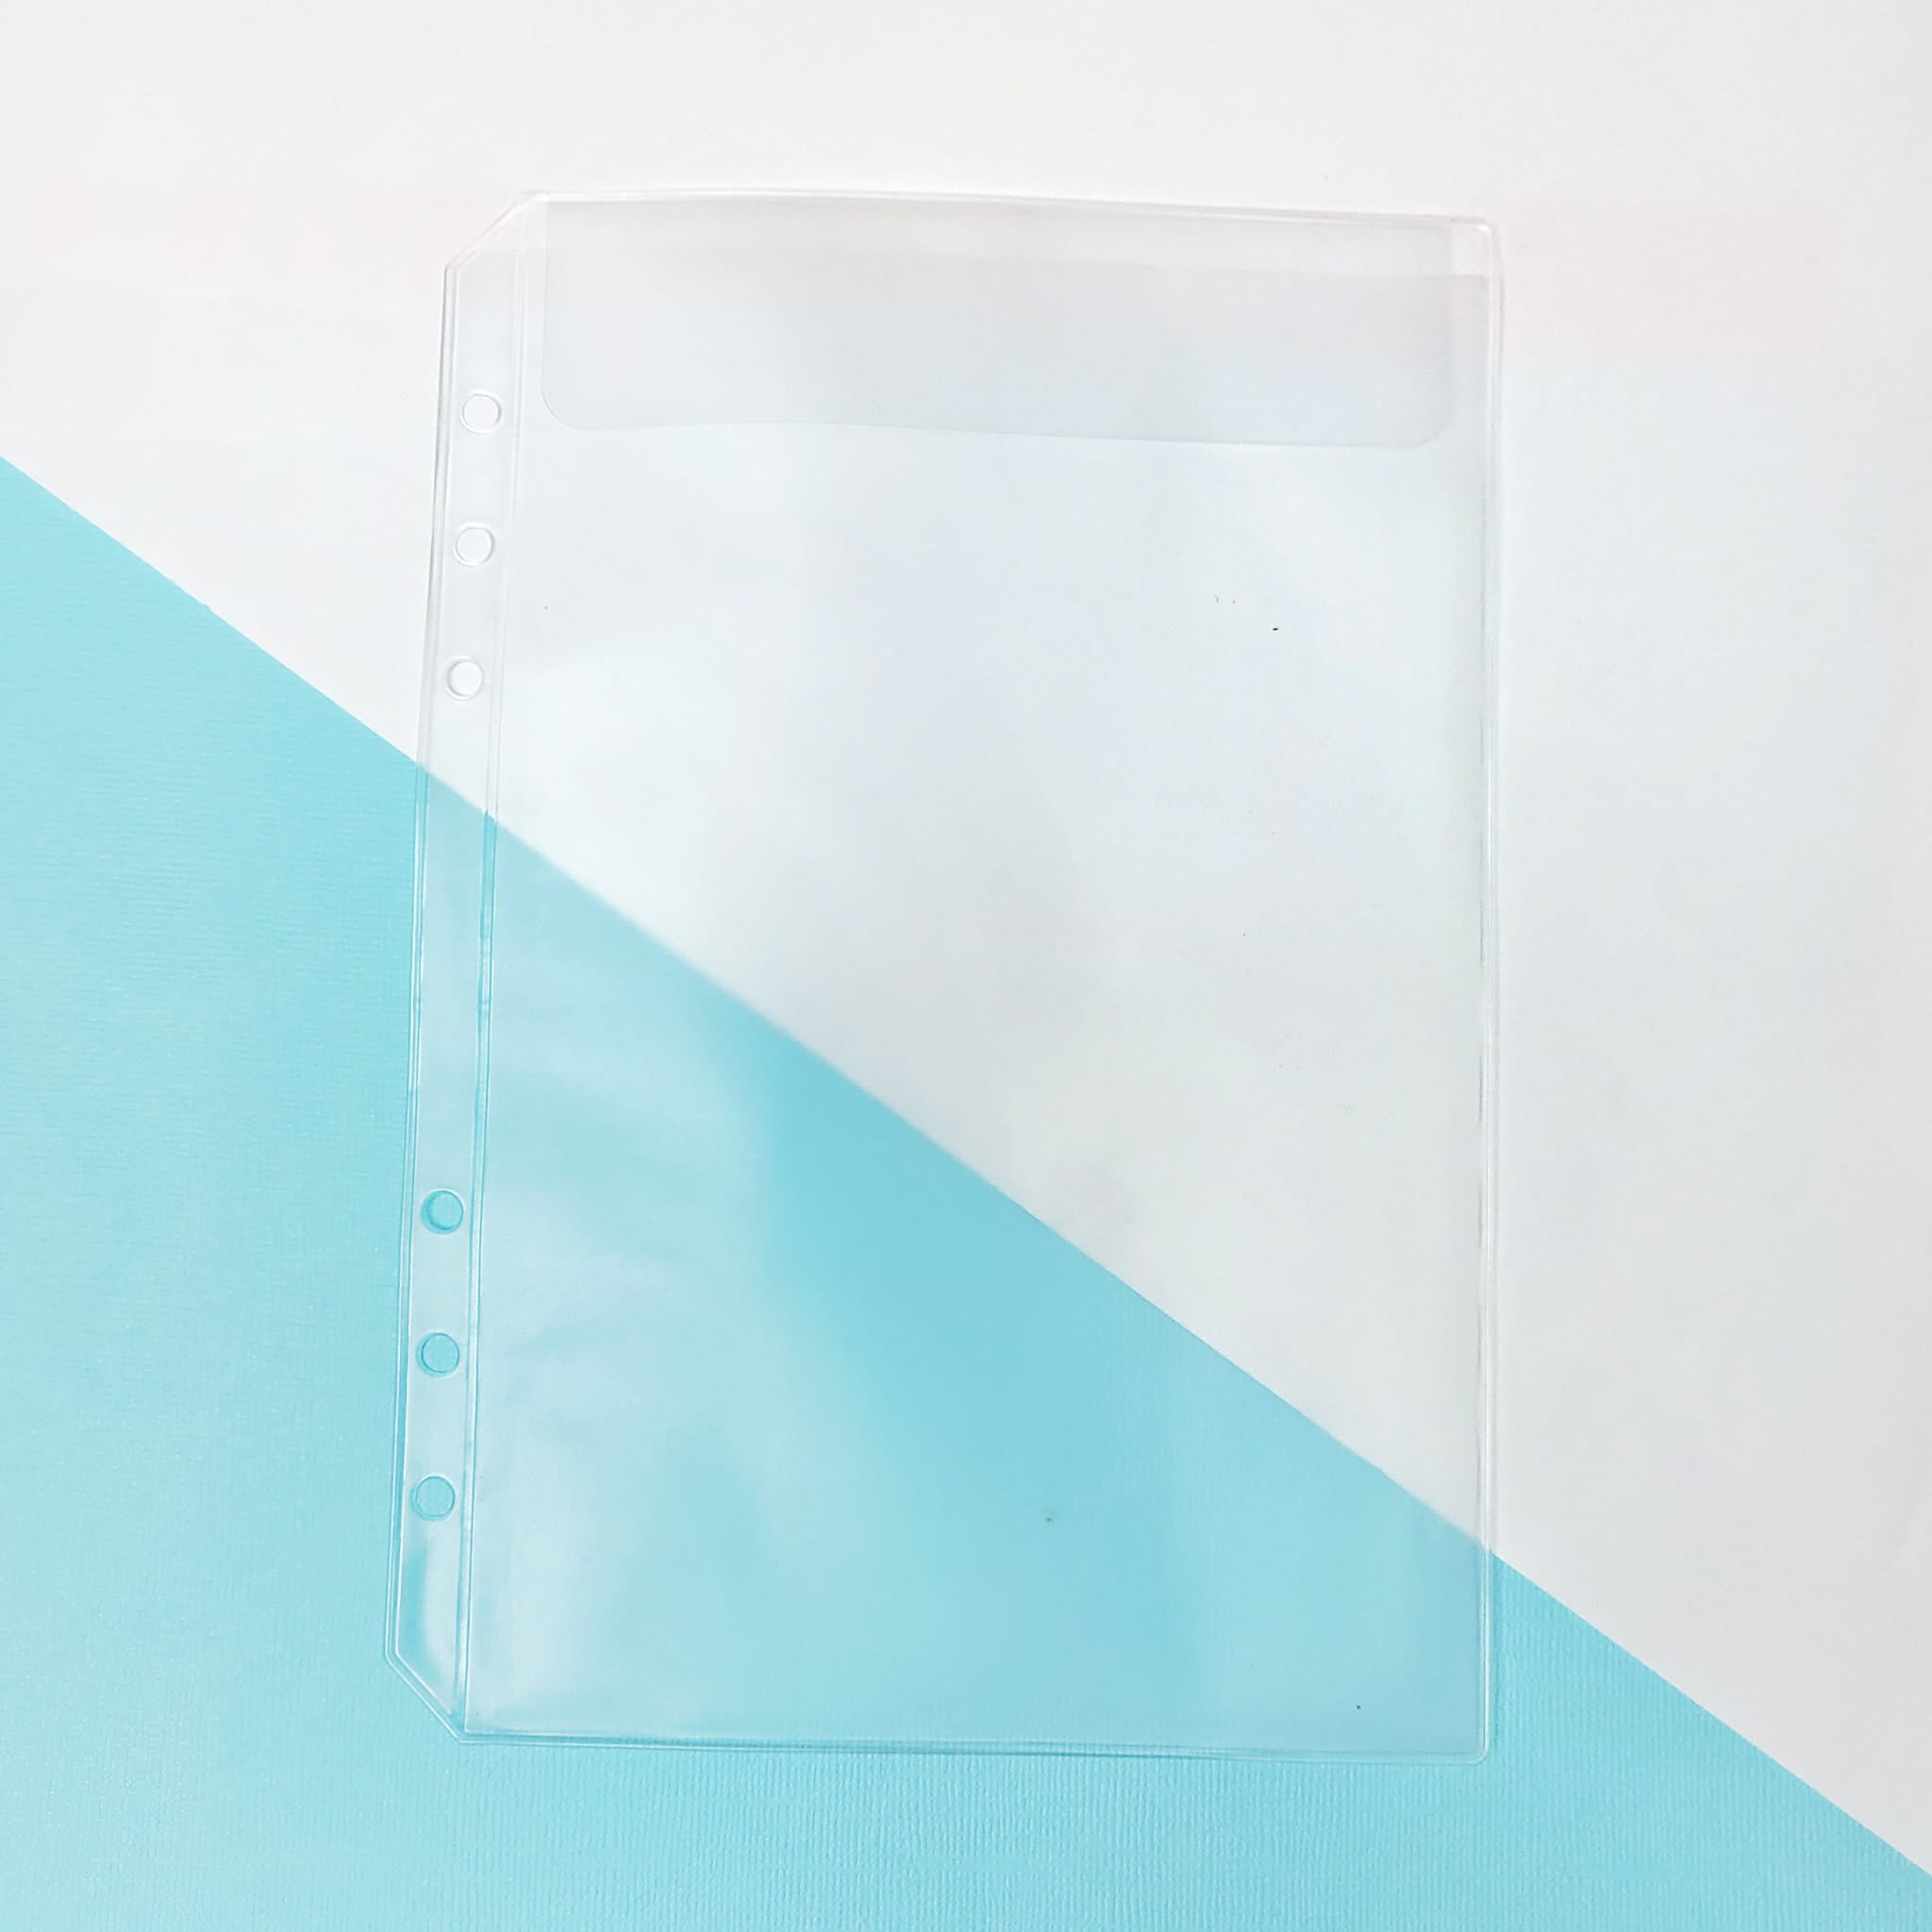 Pochette plastique perforée pour organiseur planner A5 / A6